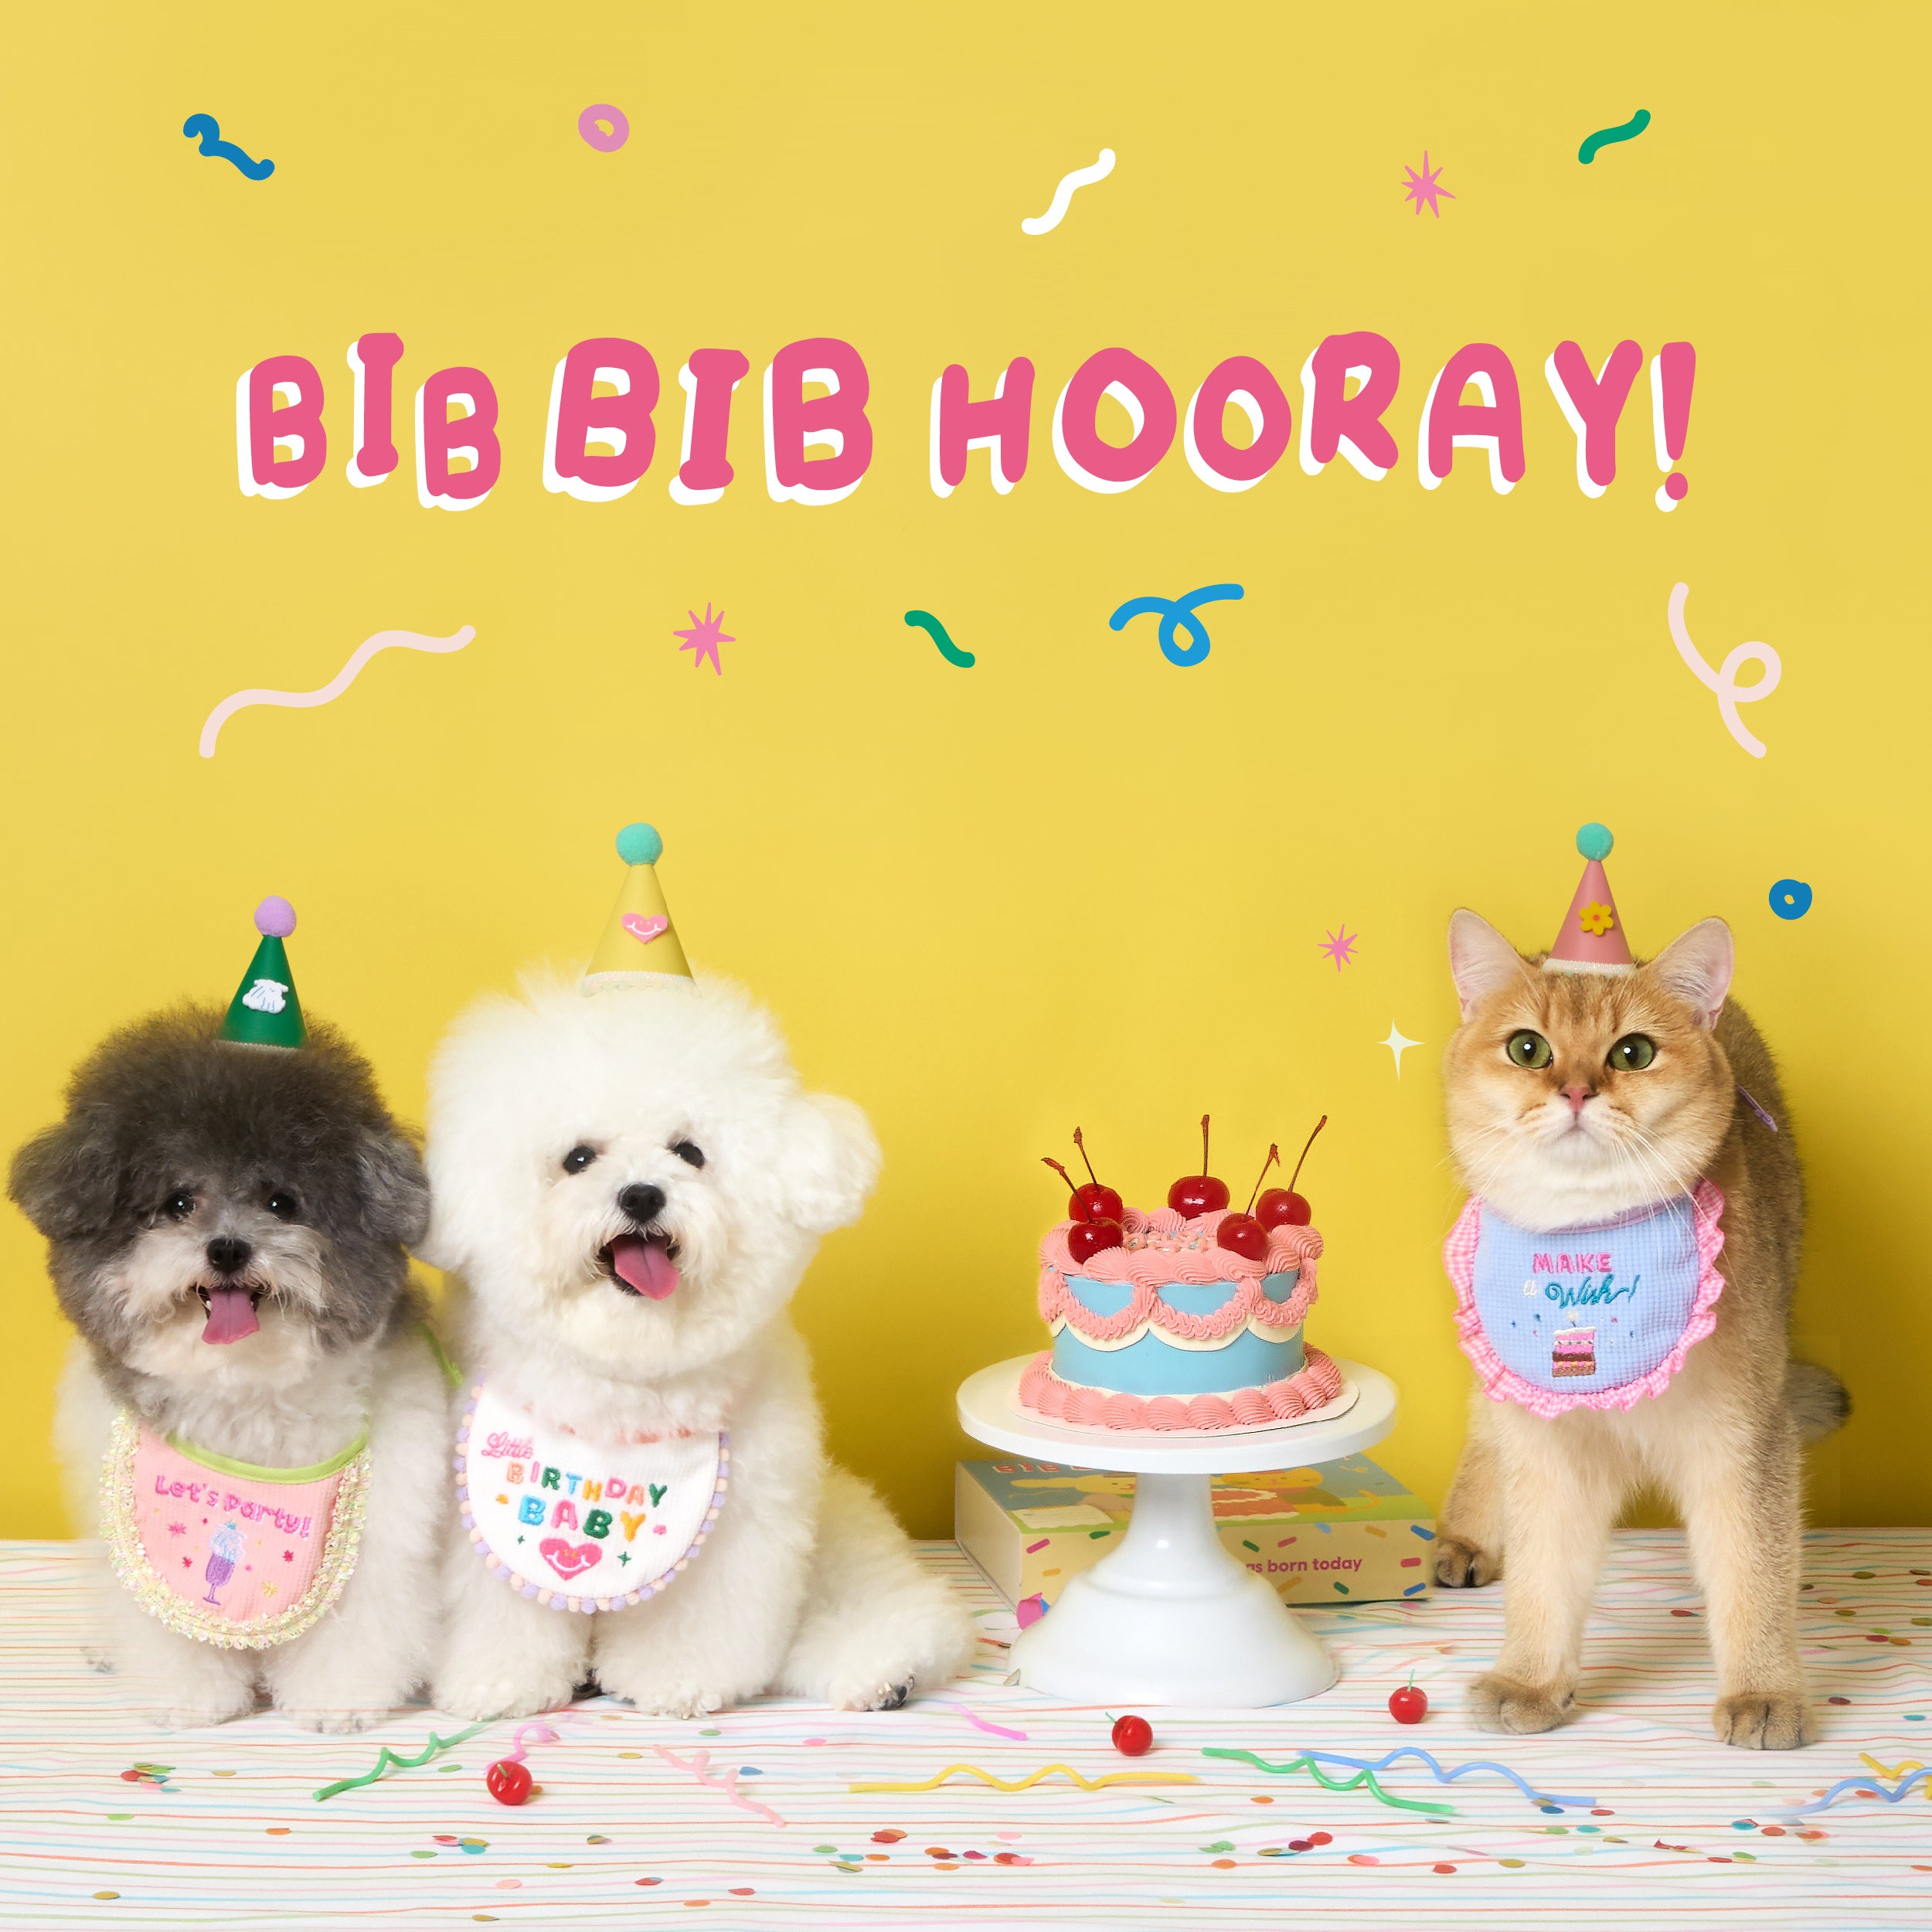 Bib Bib hooray II Birthday bib